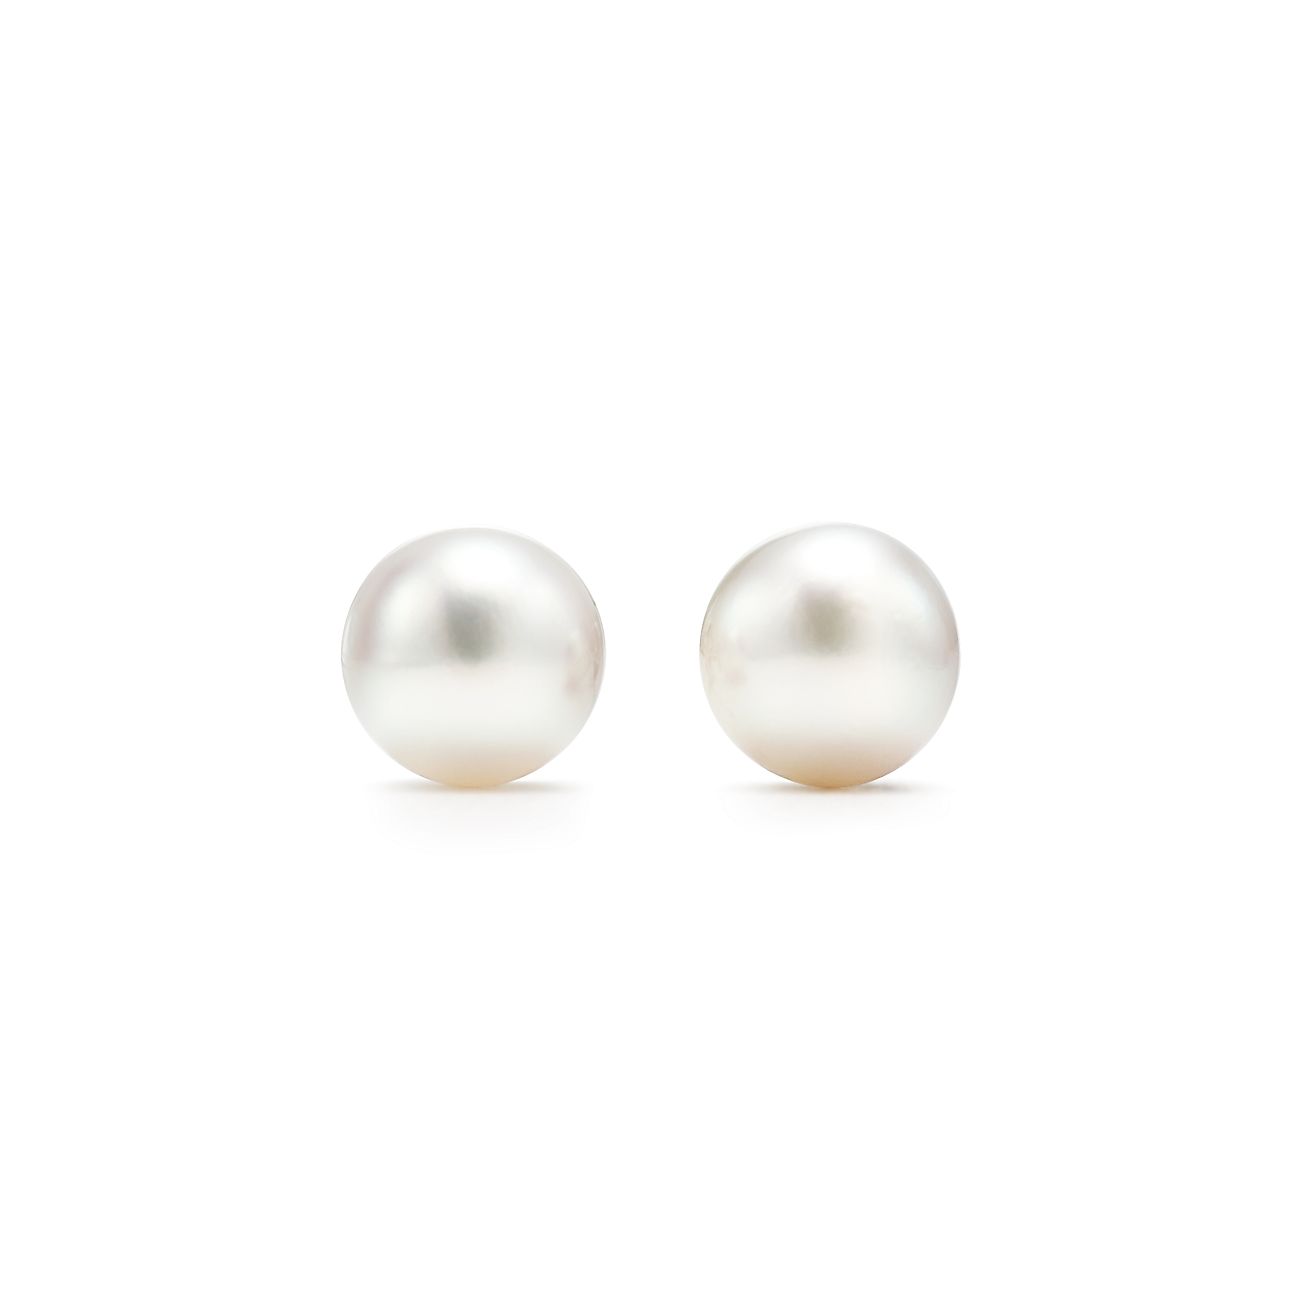 Tiffany Signature® PearlsBoucles d’oreilles
en or blanc 18 carats. 6-6,5 mm.